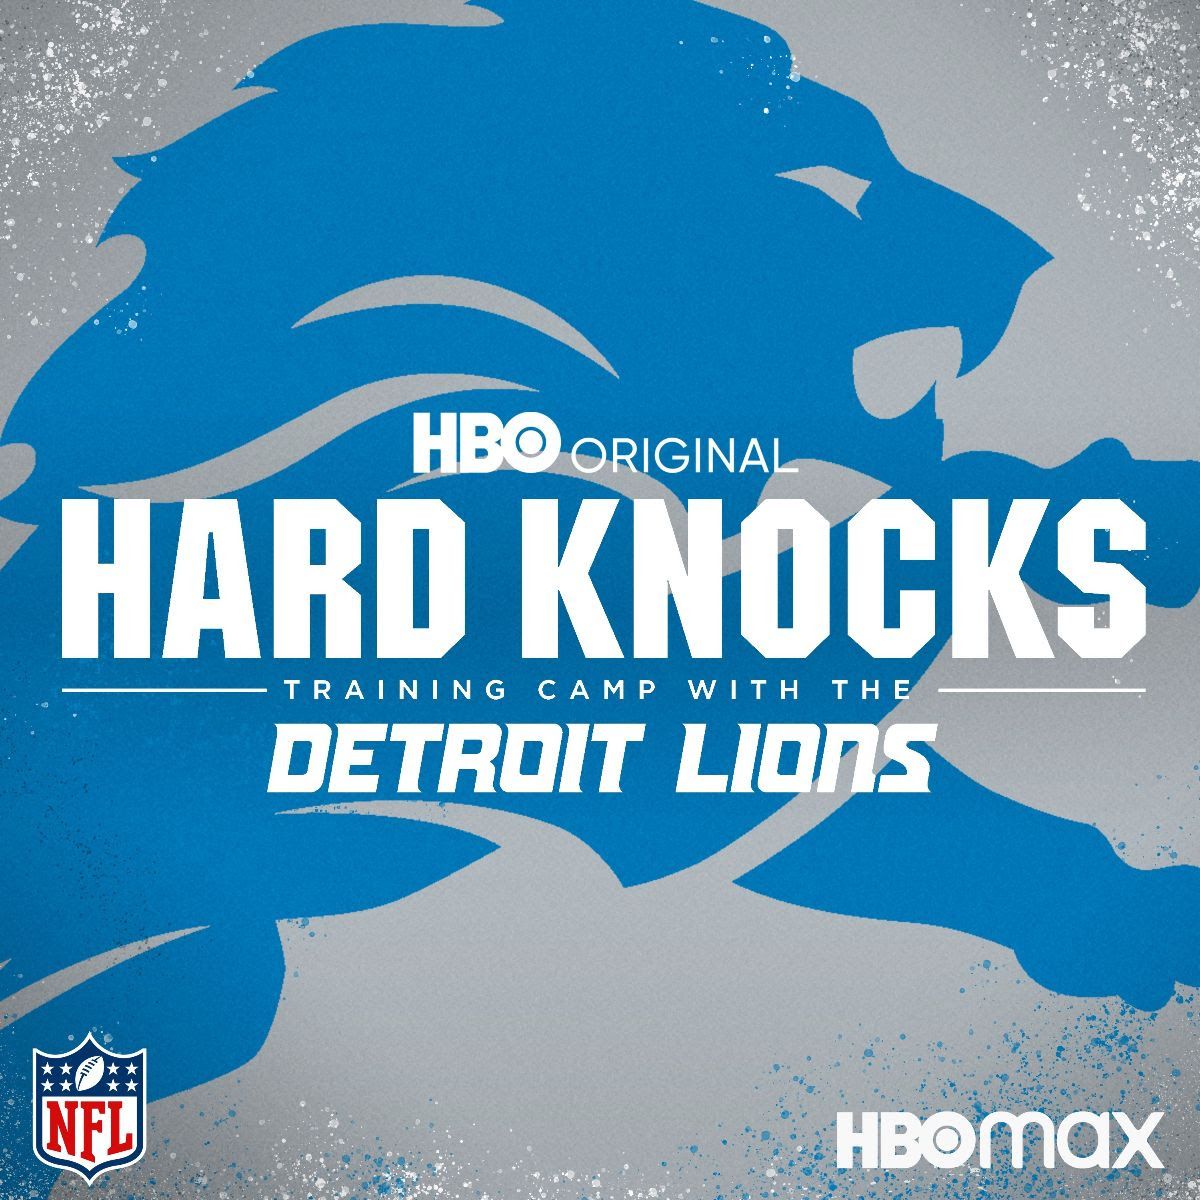 Hard Knocks Season 19 Following Detroit Lions Gets Release Date